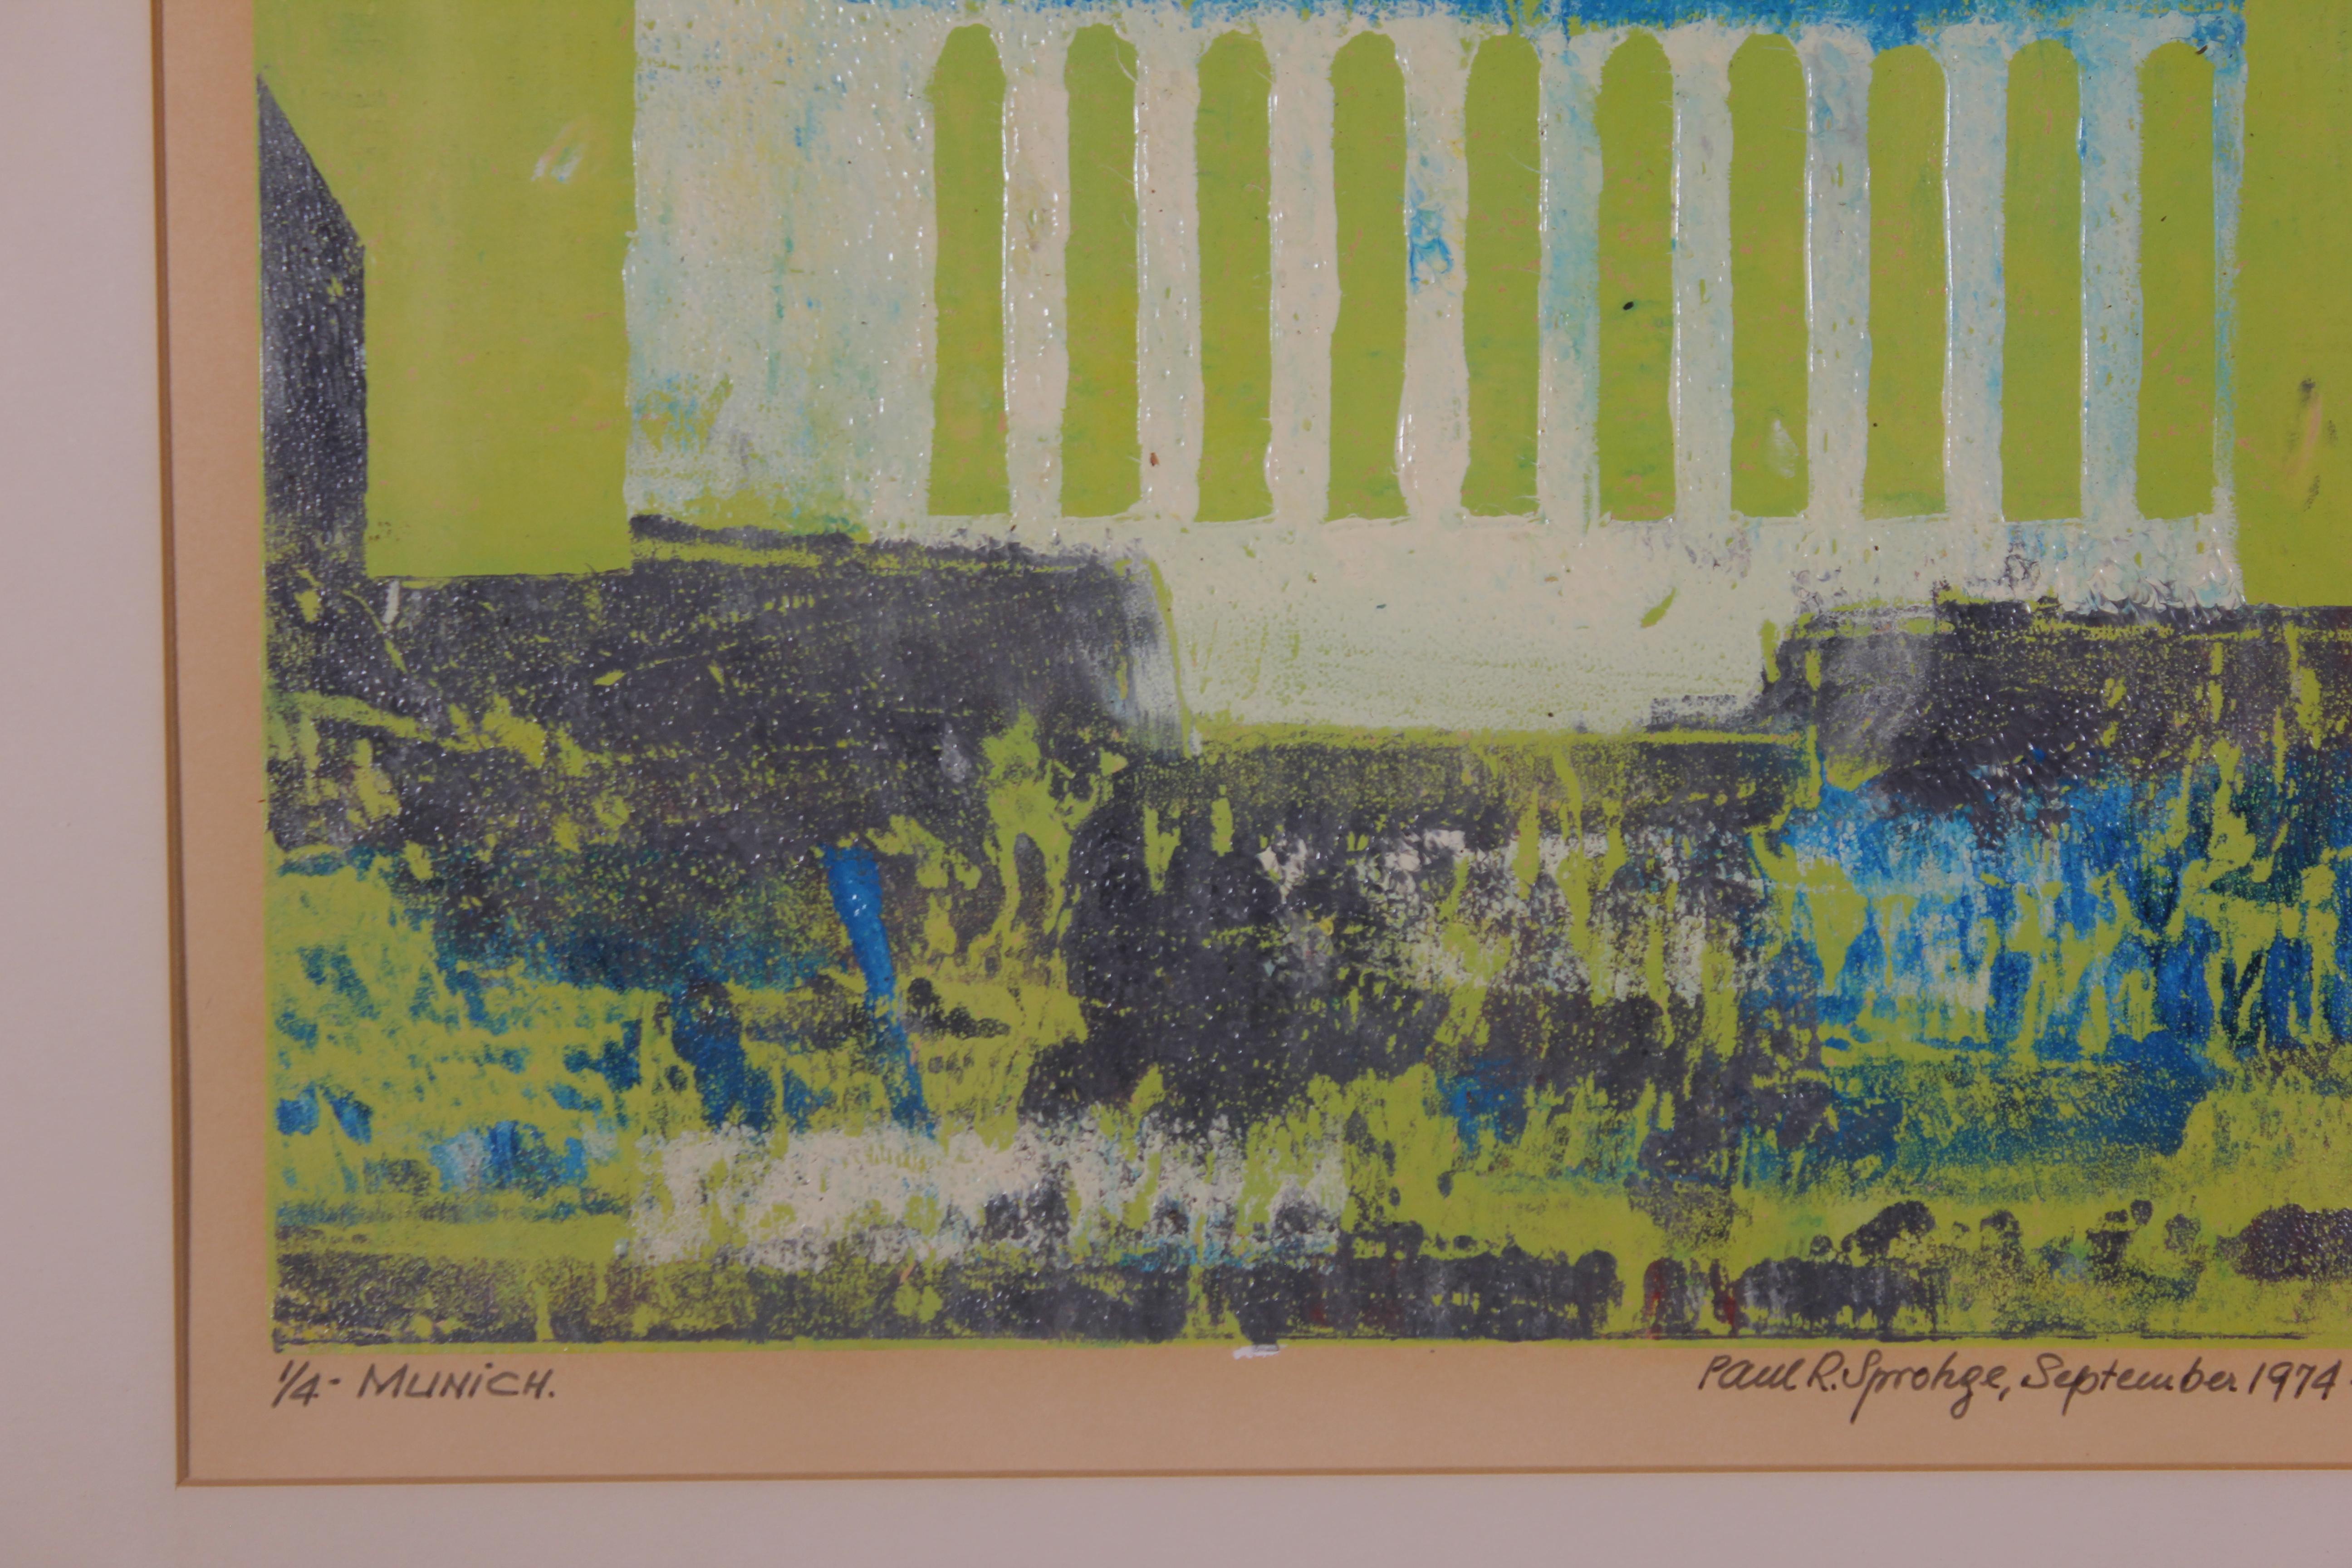 „ „Munch““ Grüne und blaue tonale Architekturlandschaft   (Impressionismus), Print, von Paul Sprohge